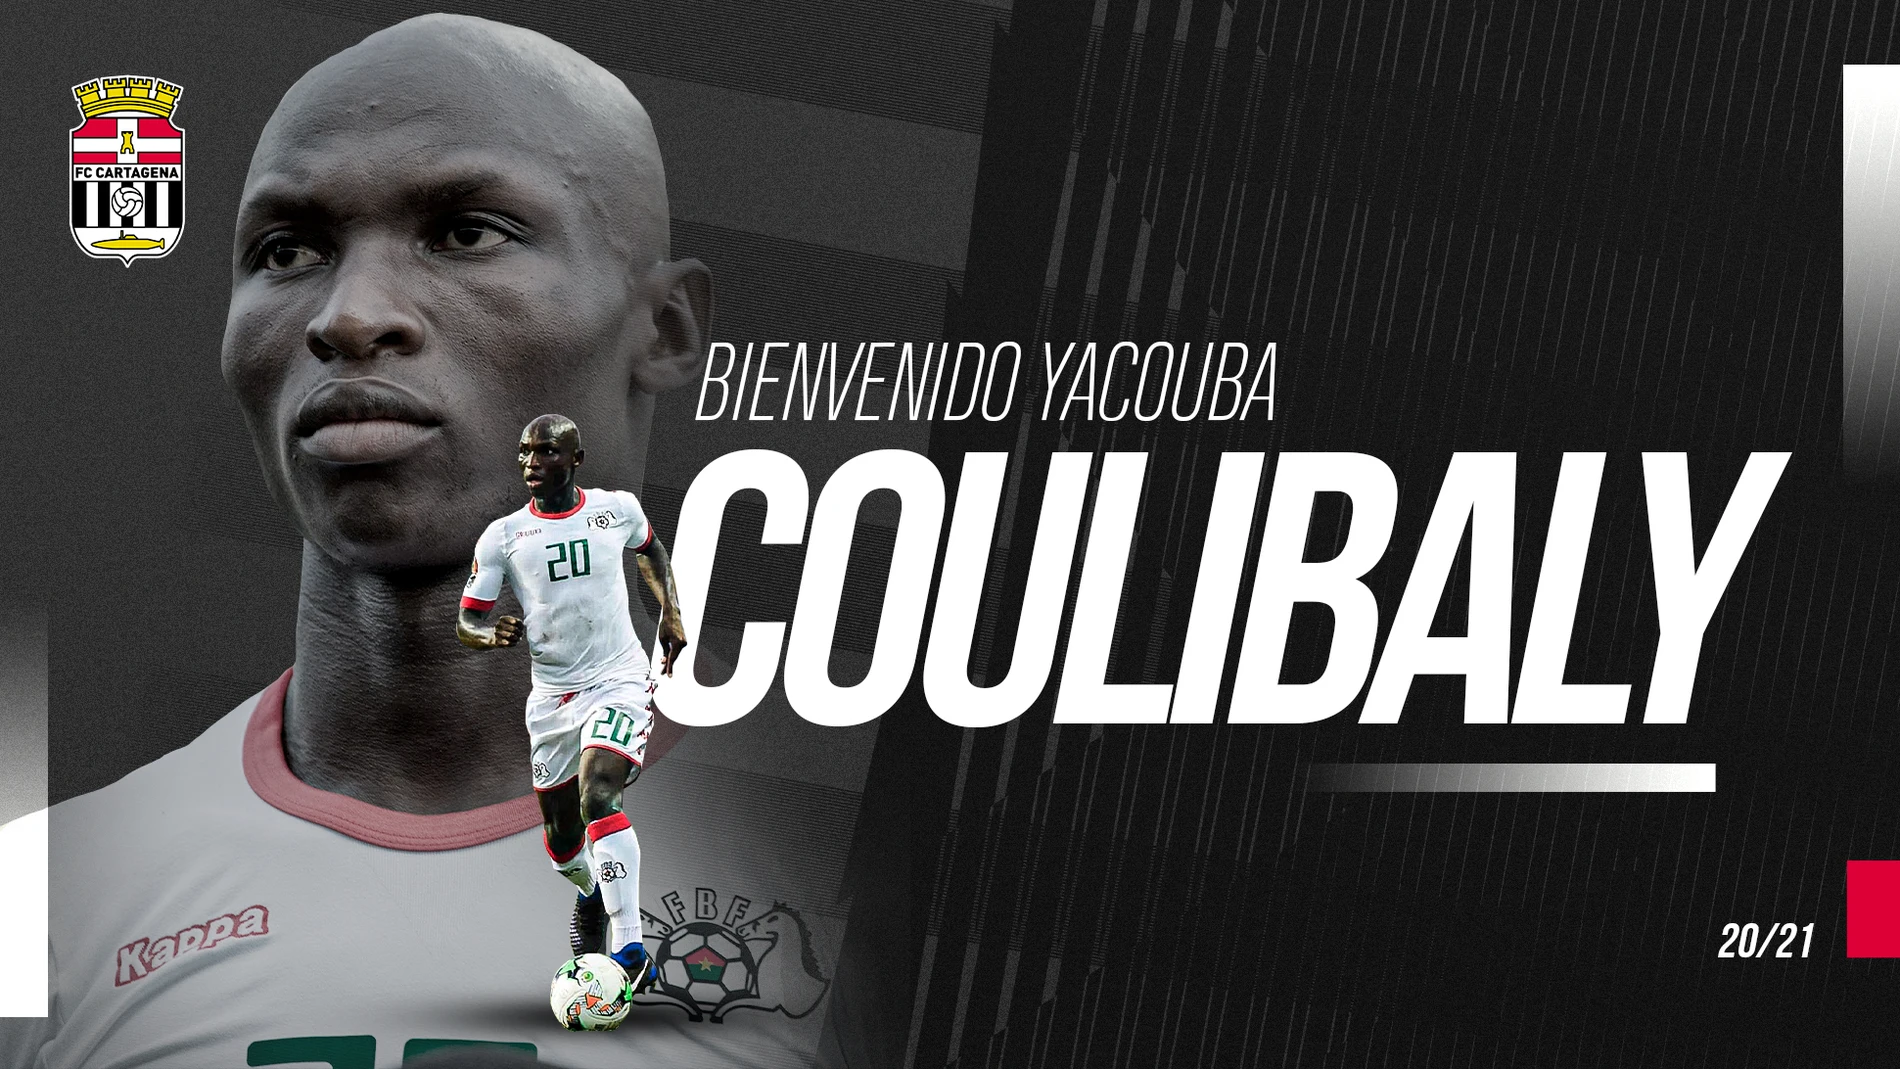 Yacouba Coulibaly